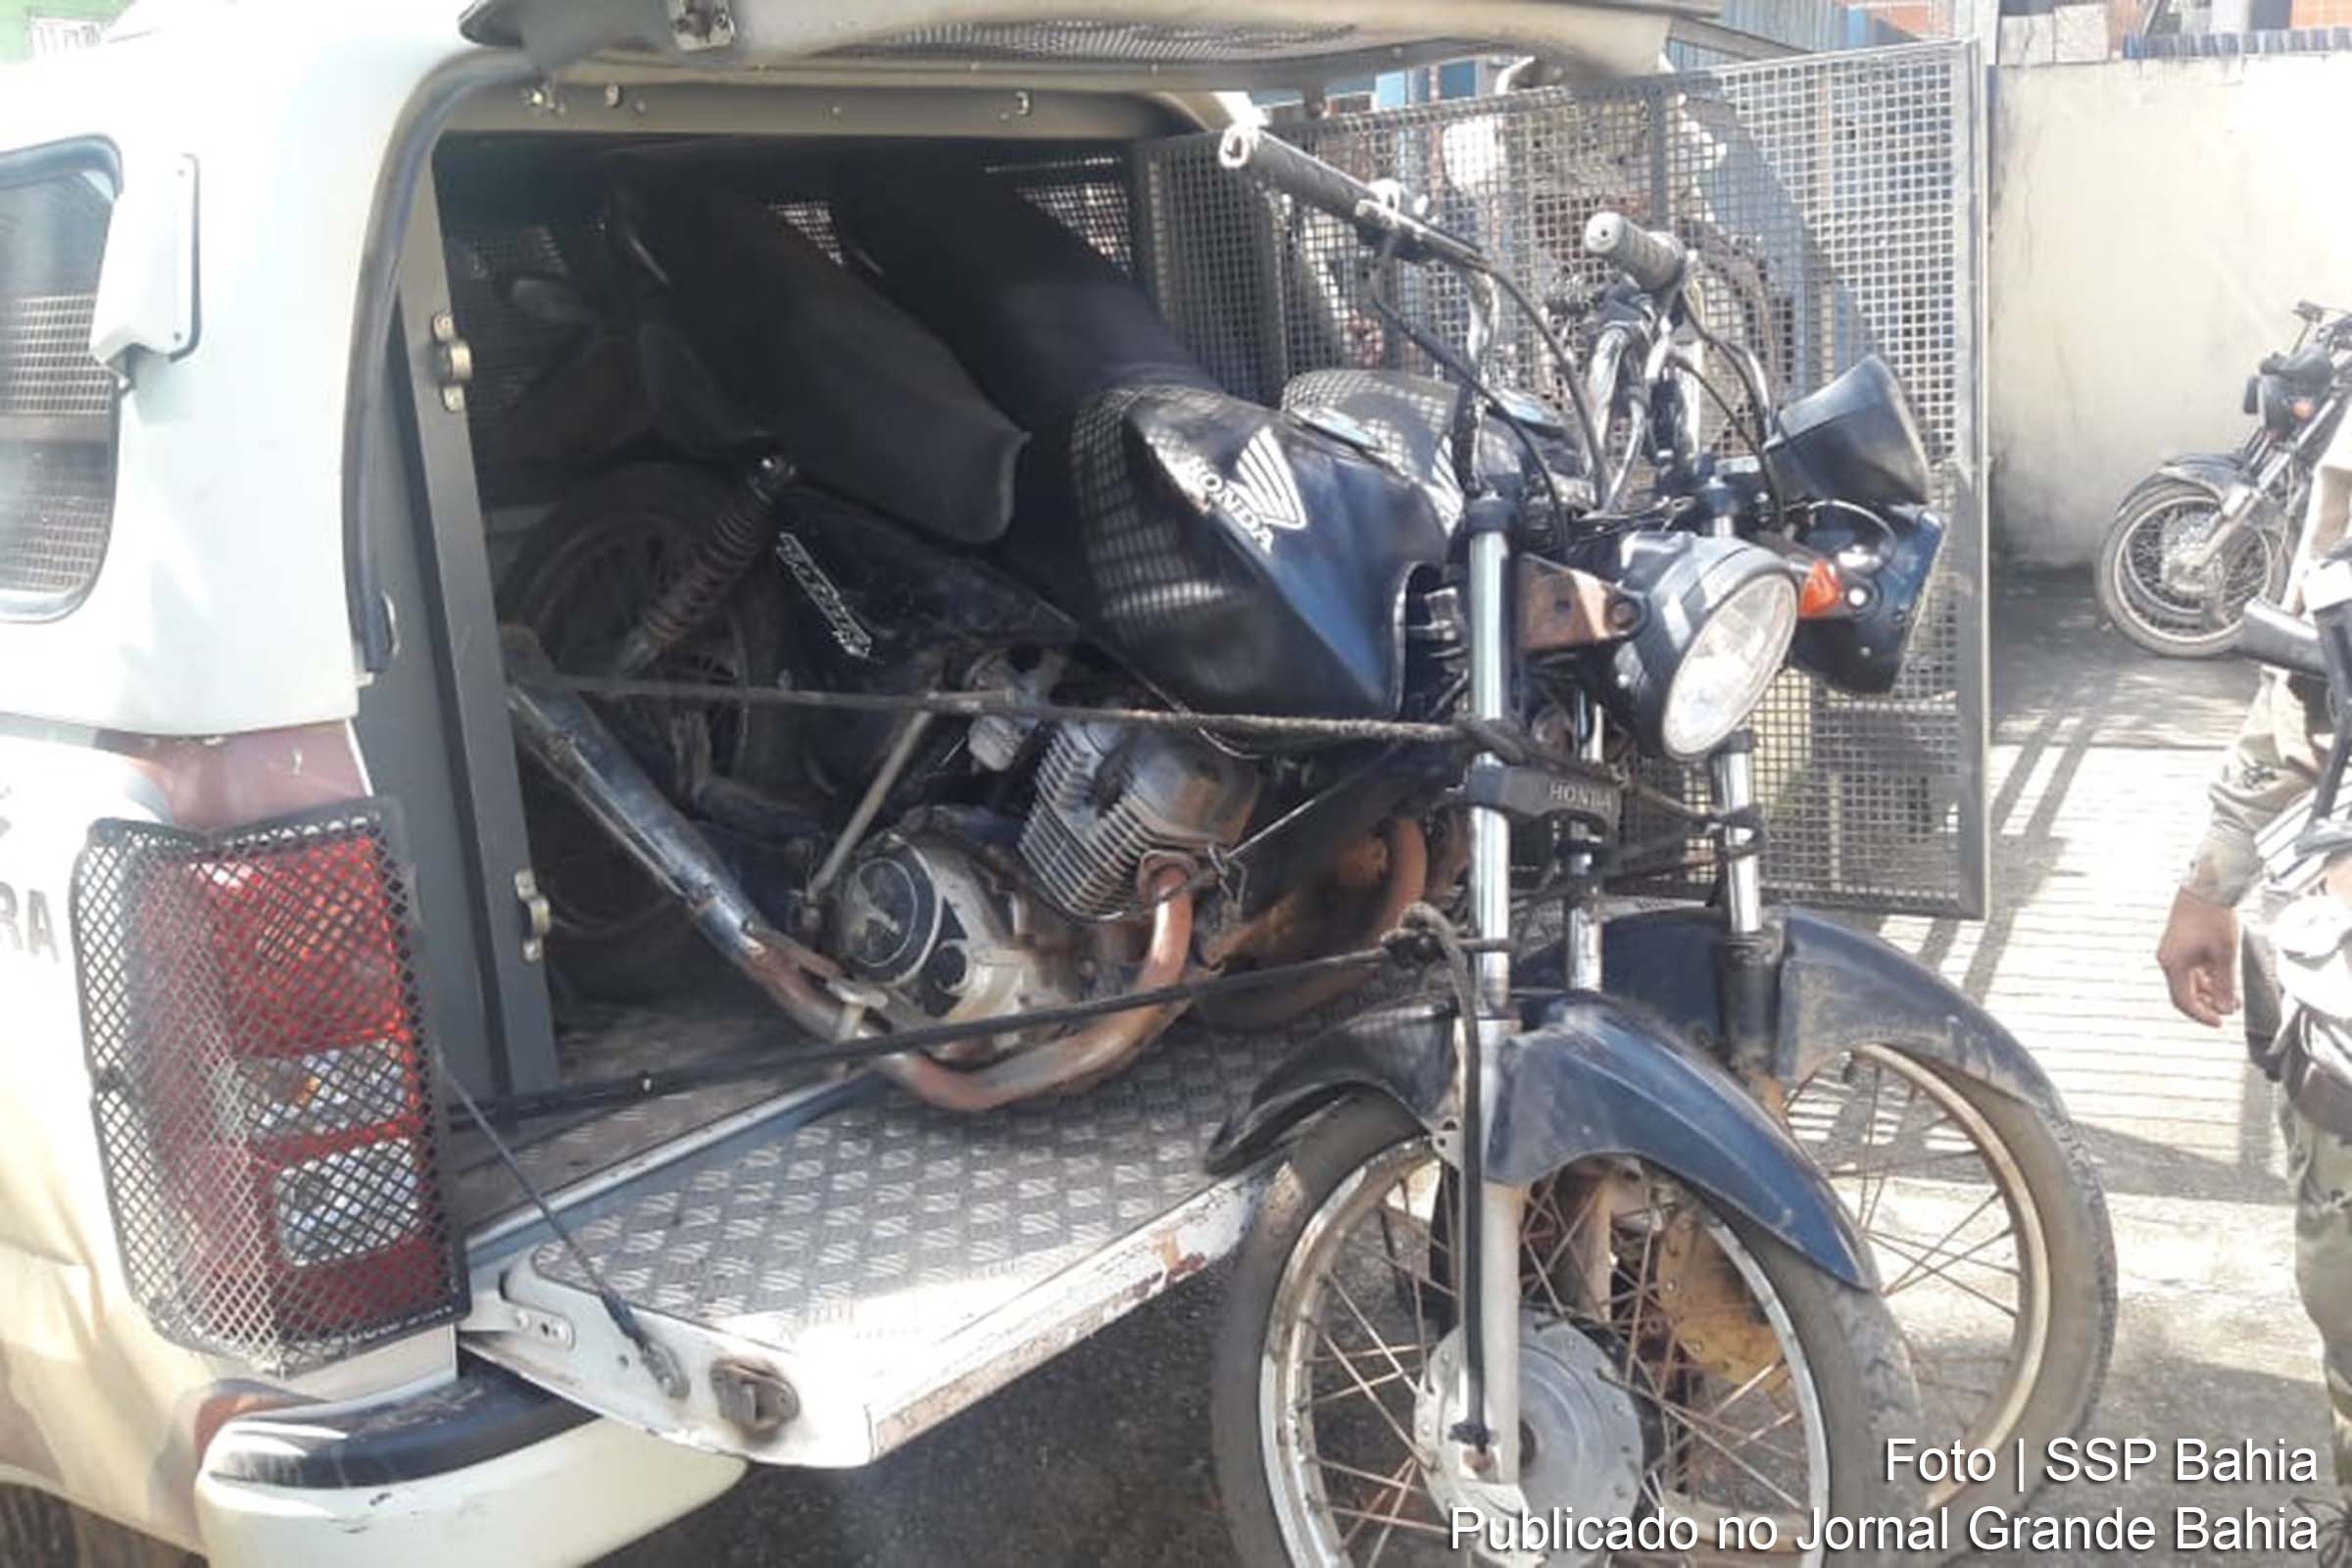 Militares recuperam duas motocicletas com chassis adulterados e sem placas.